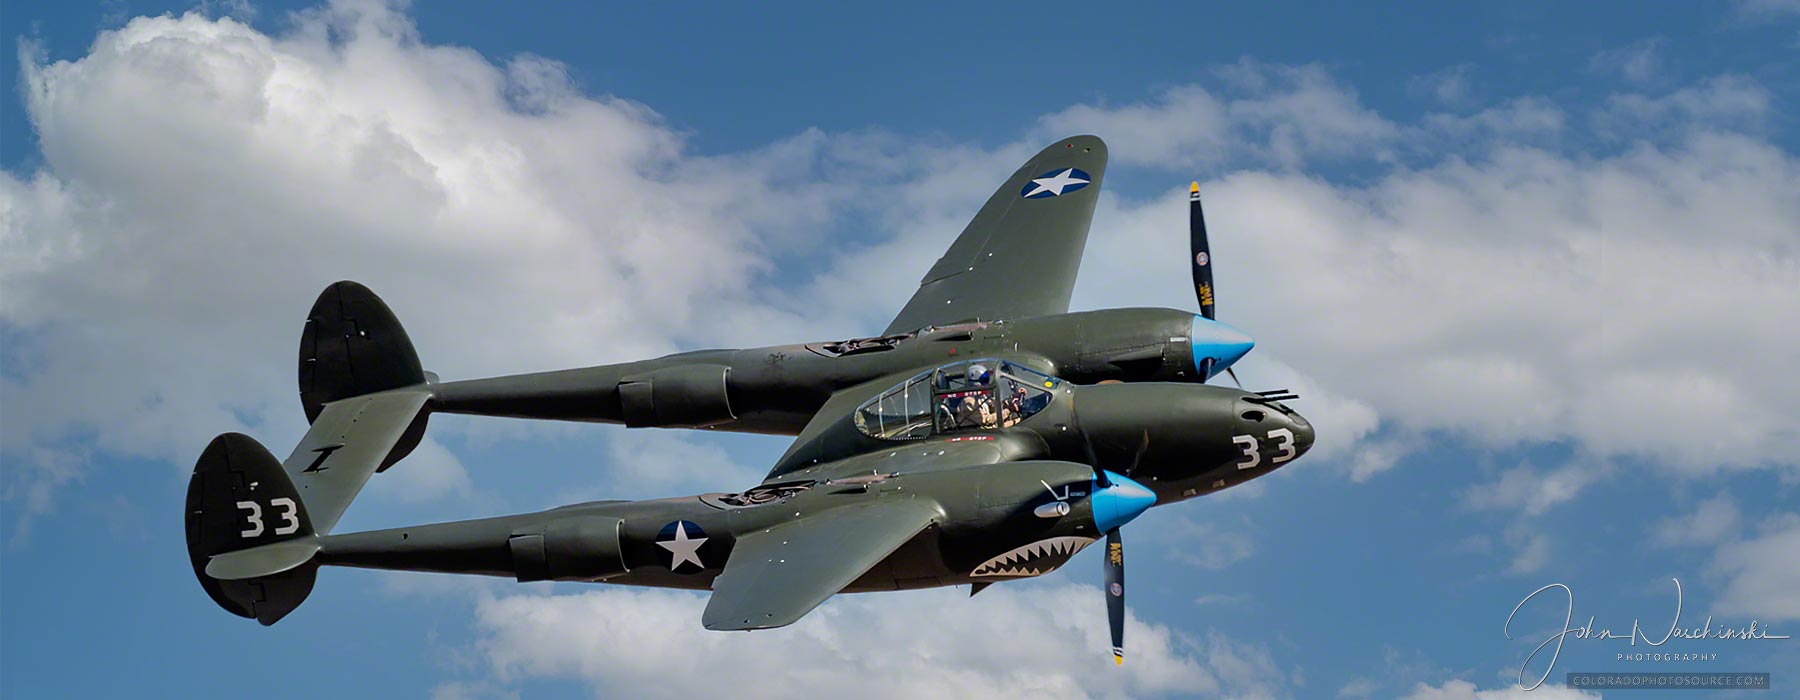 The Lockheed P-38 Lightning In Flight